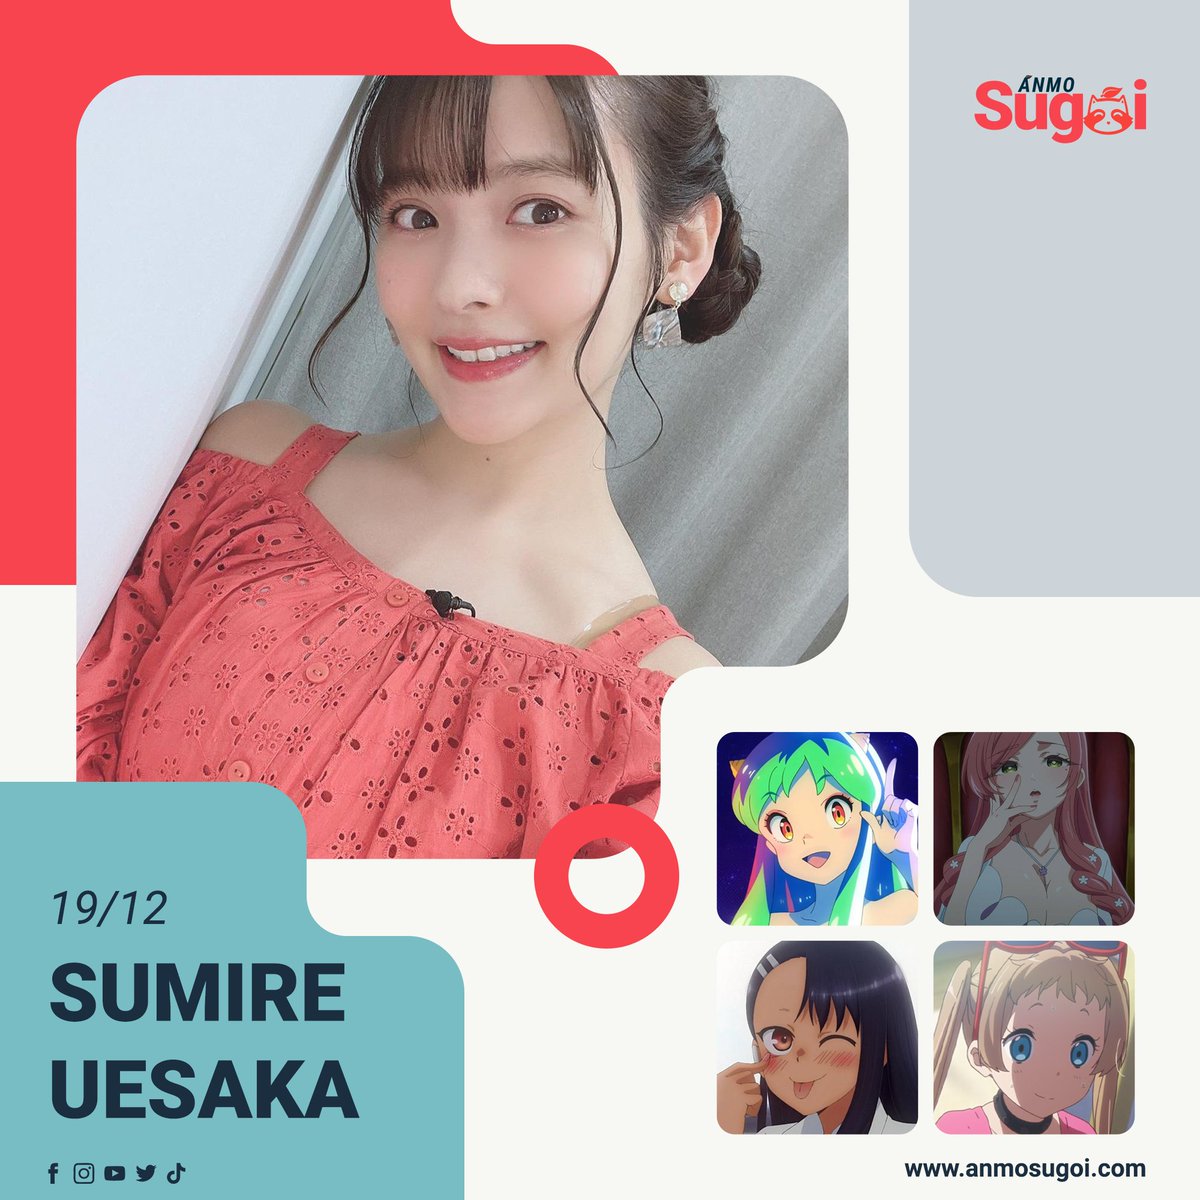 Hoy está de cumpleaños la seiyuu Sumire Uesaka reconocida por interpretar a Lum, Hahari Hanazono, Hayase Nagatoro y Sanae Dekomori.

¡Feliz cumpleaños! 🎂🎈🎀🎁

#SumireUesaka #上坂すみれ